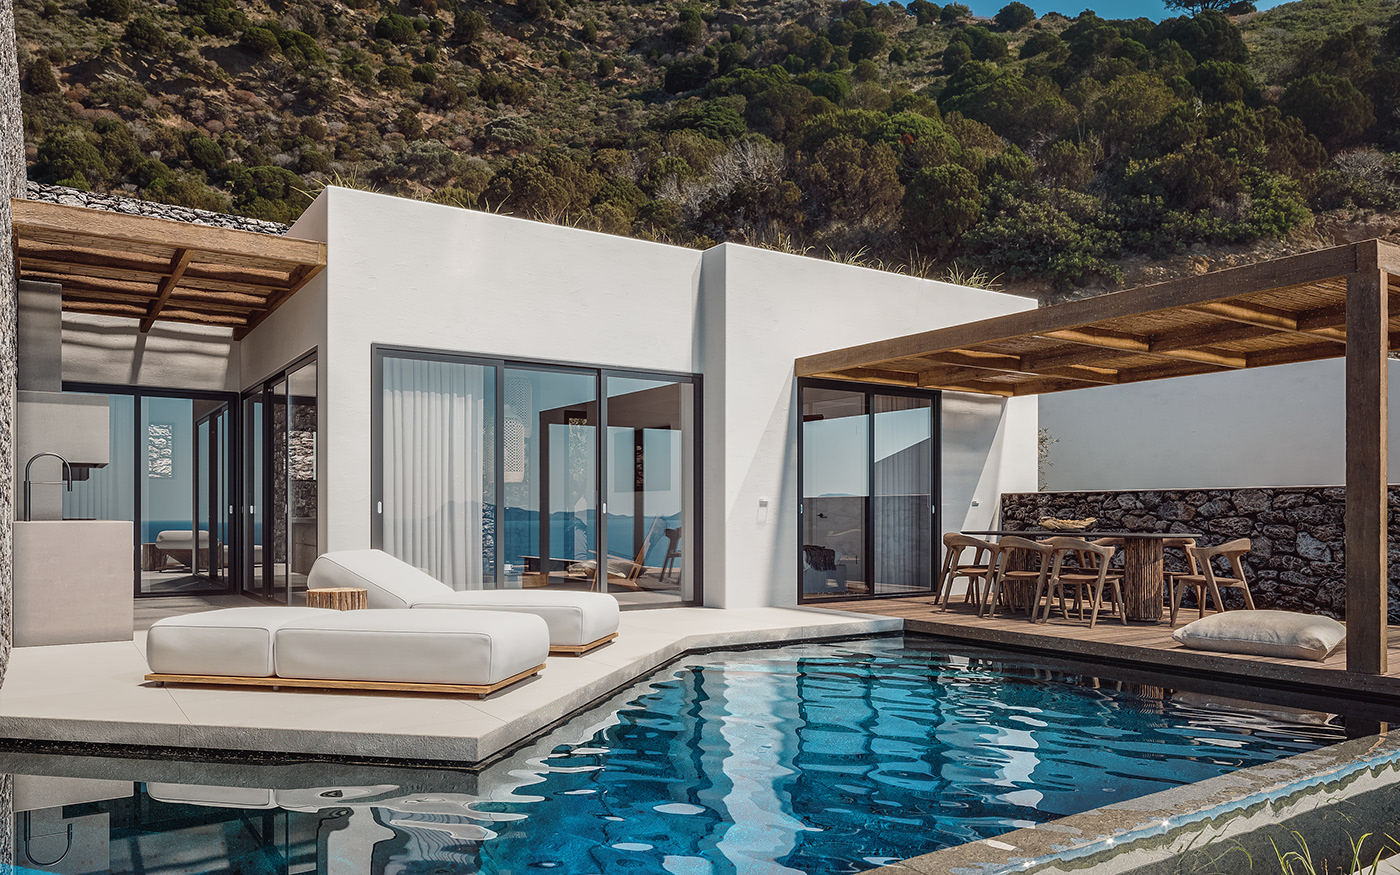 3ds max architecture corona design Greece Interior Pool Villa visualisation